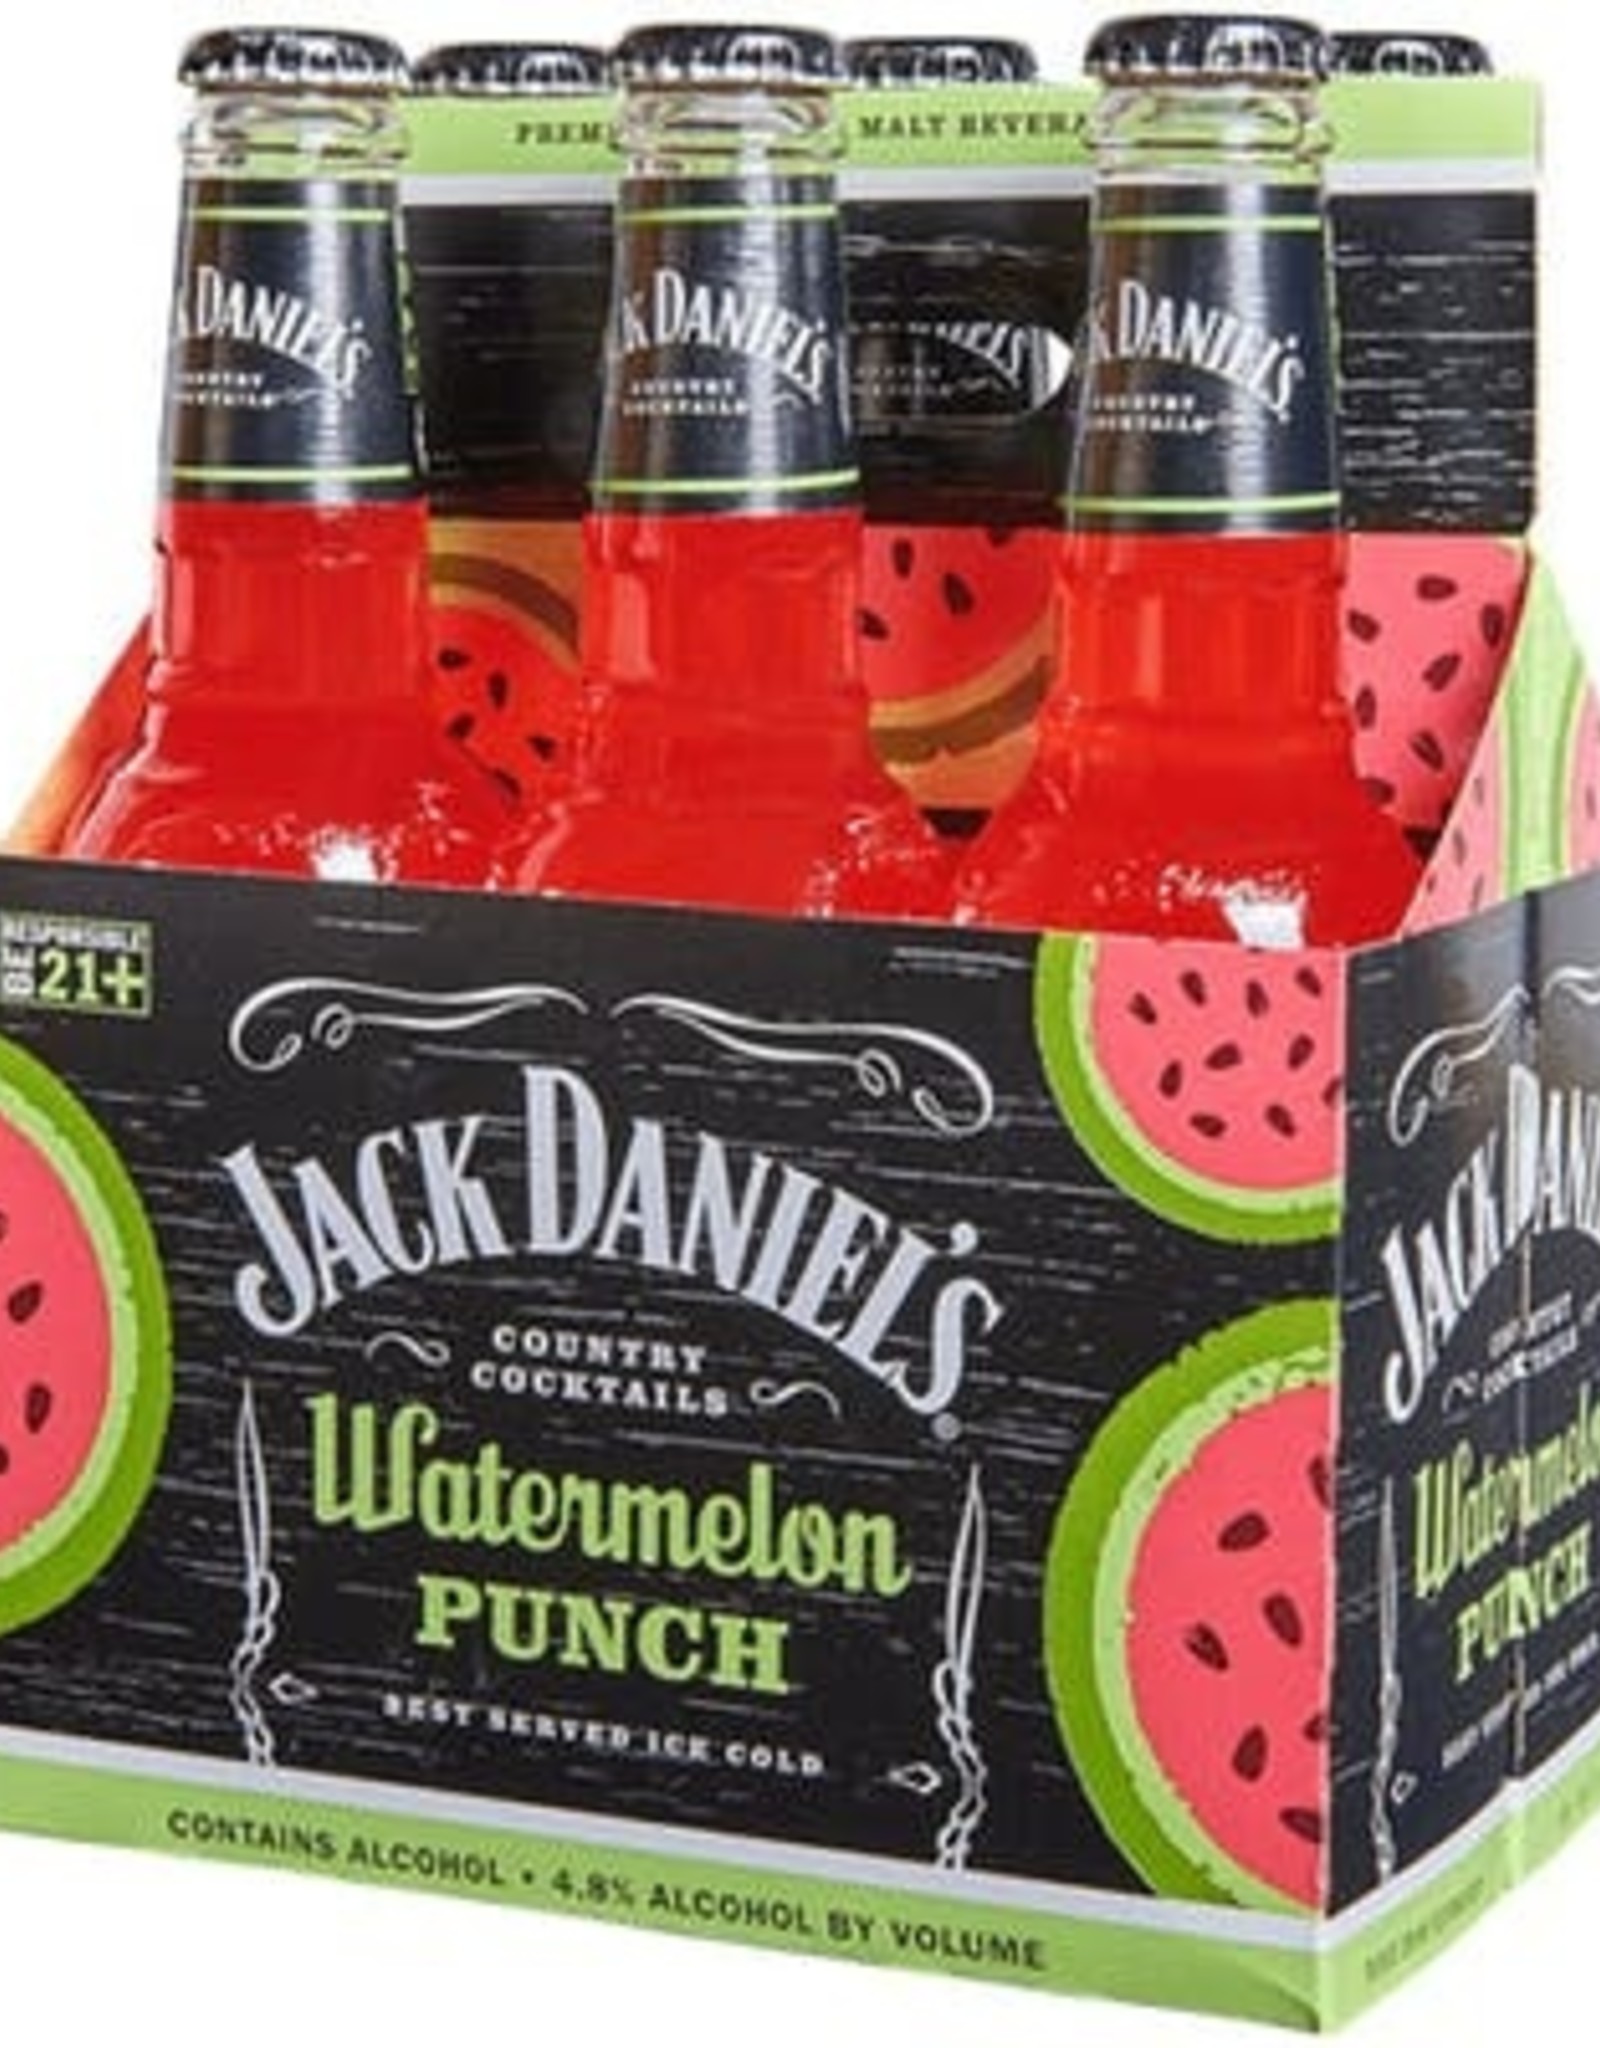 Jack Daniel's Jack Daniels - Country Cocktails - Watermelon Punch - 6pk - 10oz - Bottles